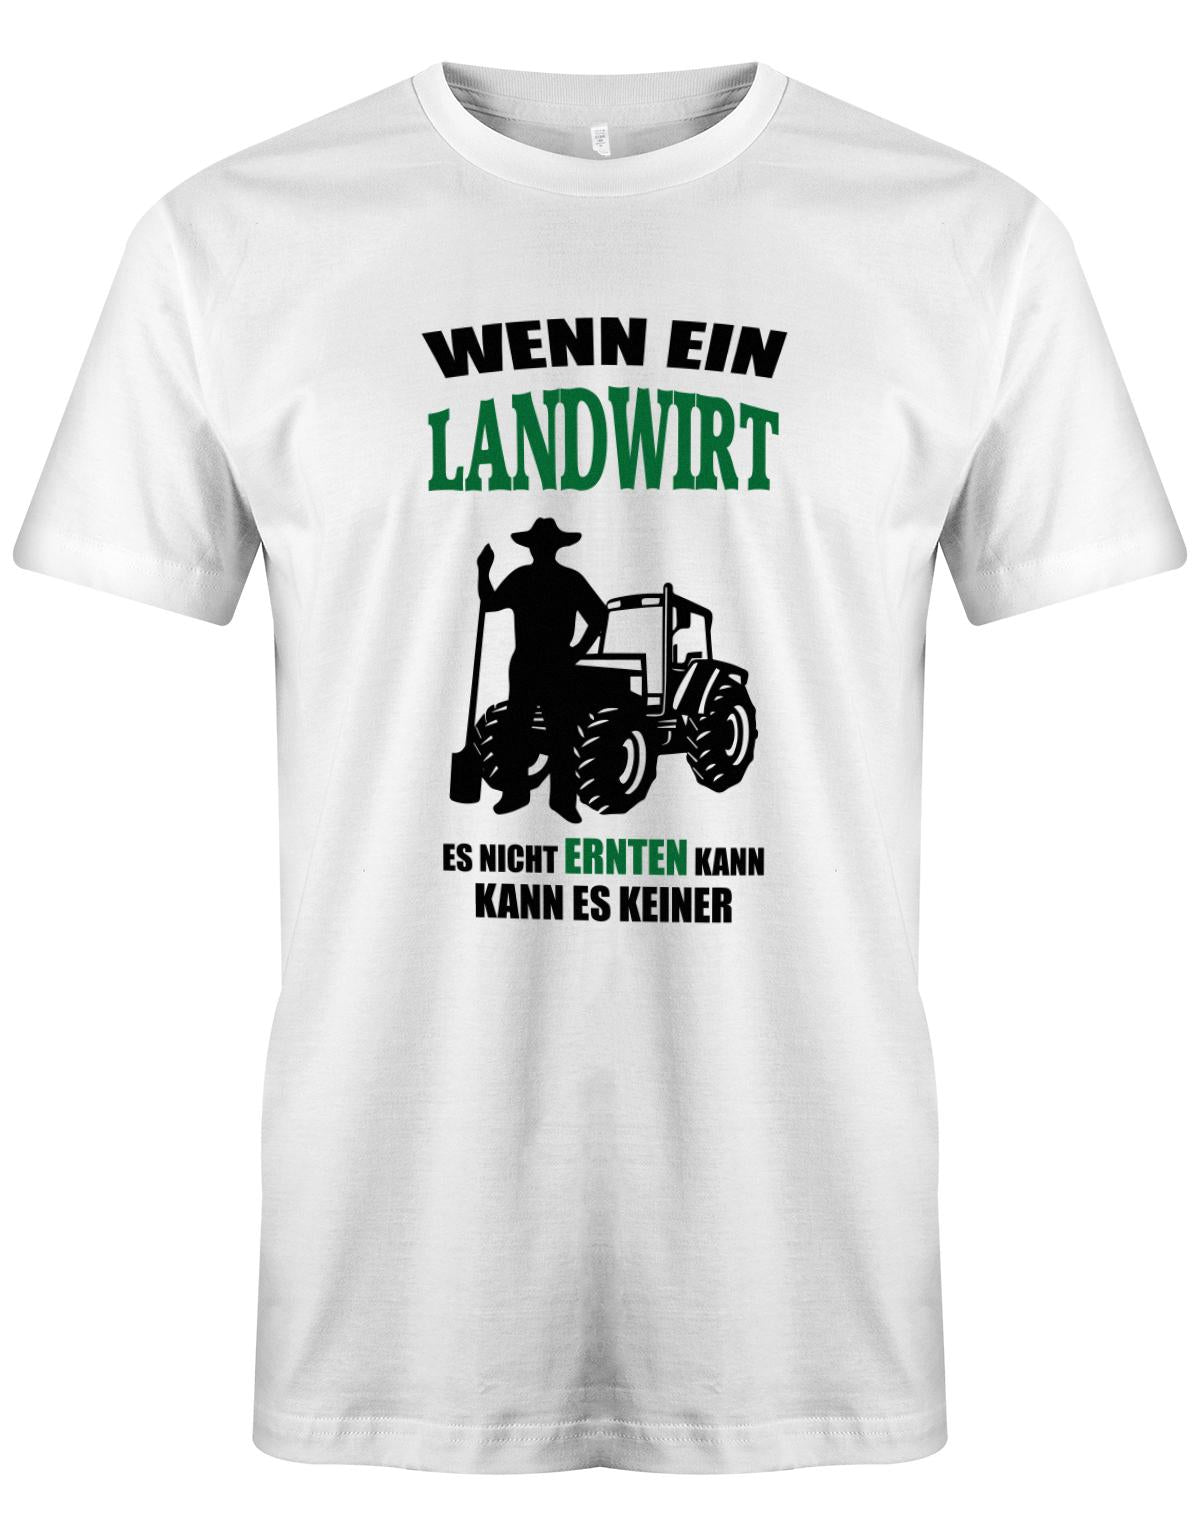 Landwirtschaft Shirt Männer - Wenn ein Landwirt es nicht ernten kann. Kann es keiner Weisss